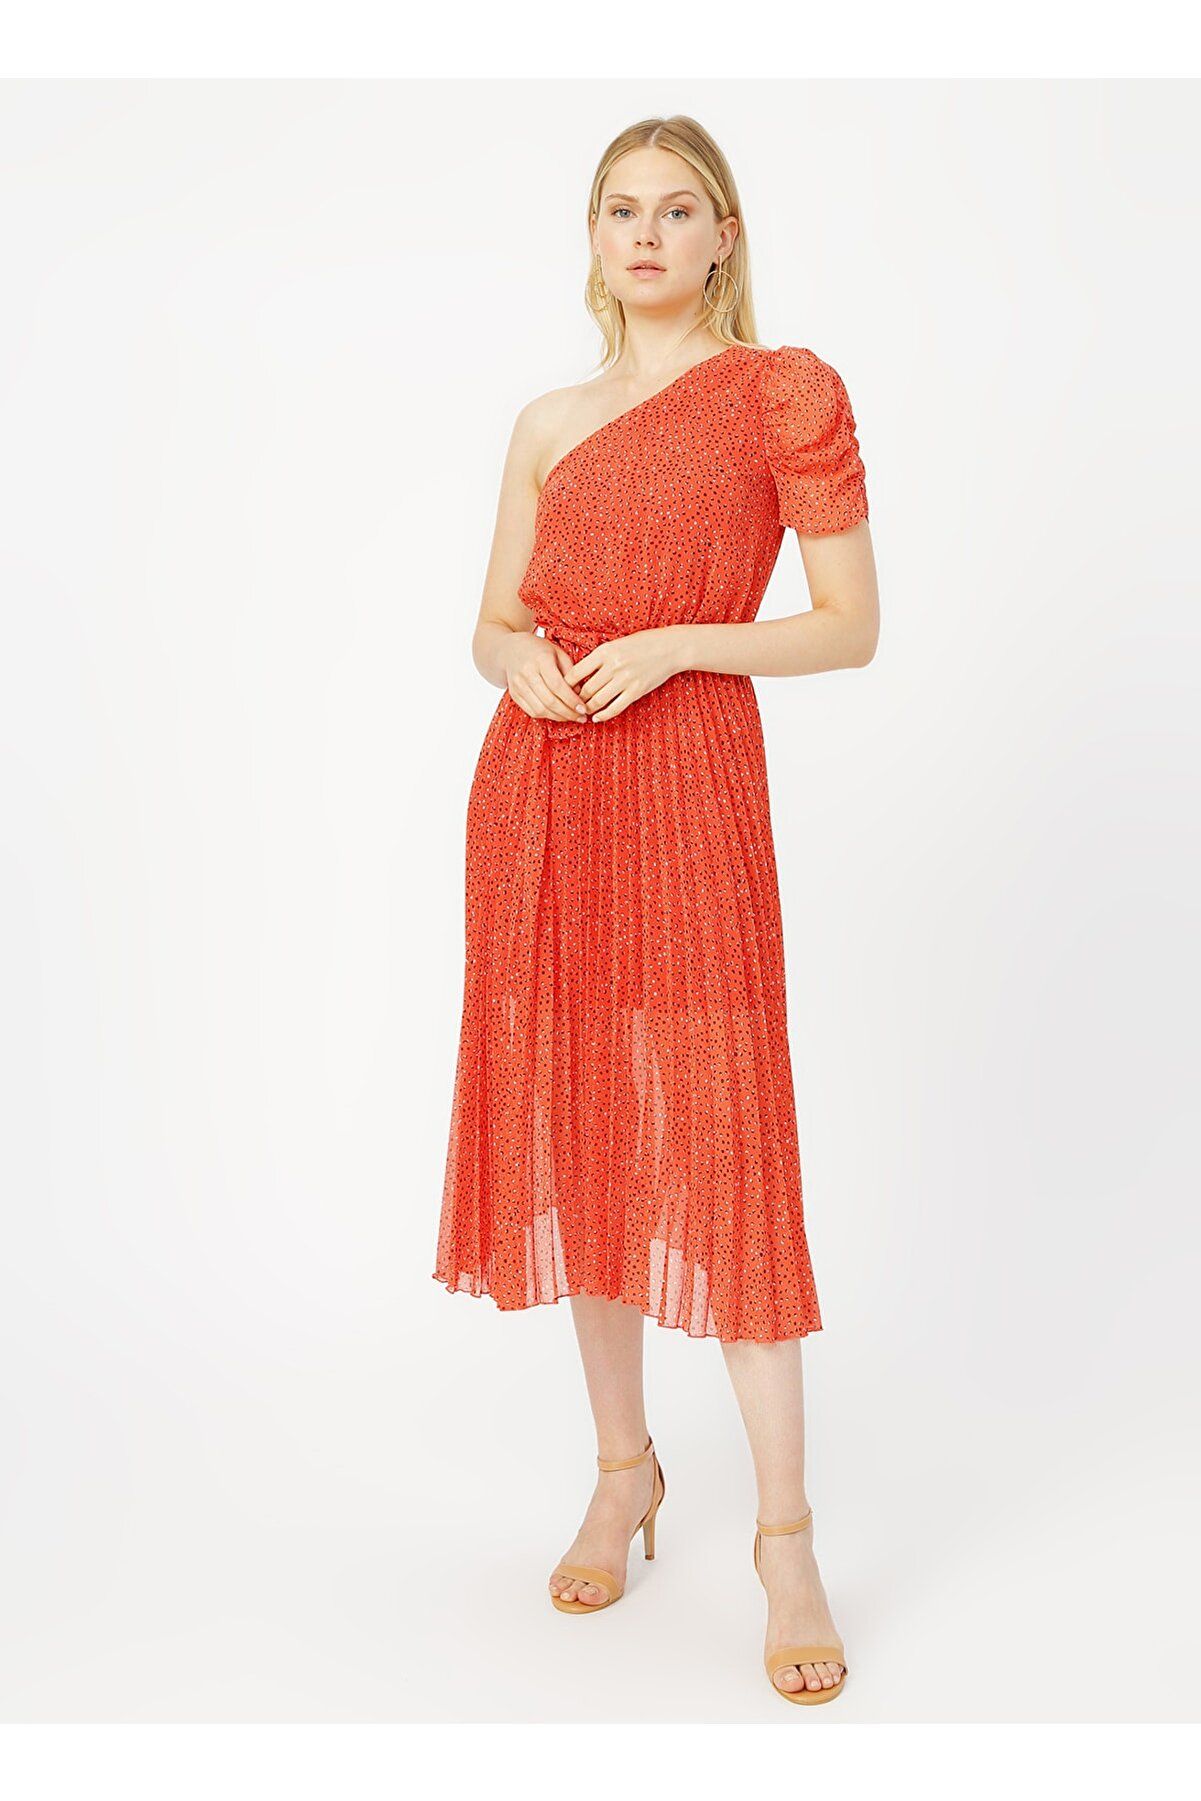 RANDOM Pilise Detaylı Tek Omuz Kırmızı Desenli Elbise
%100 Polyester